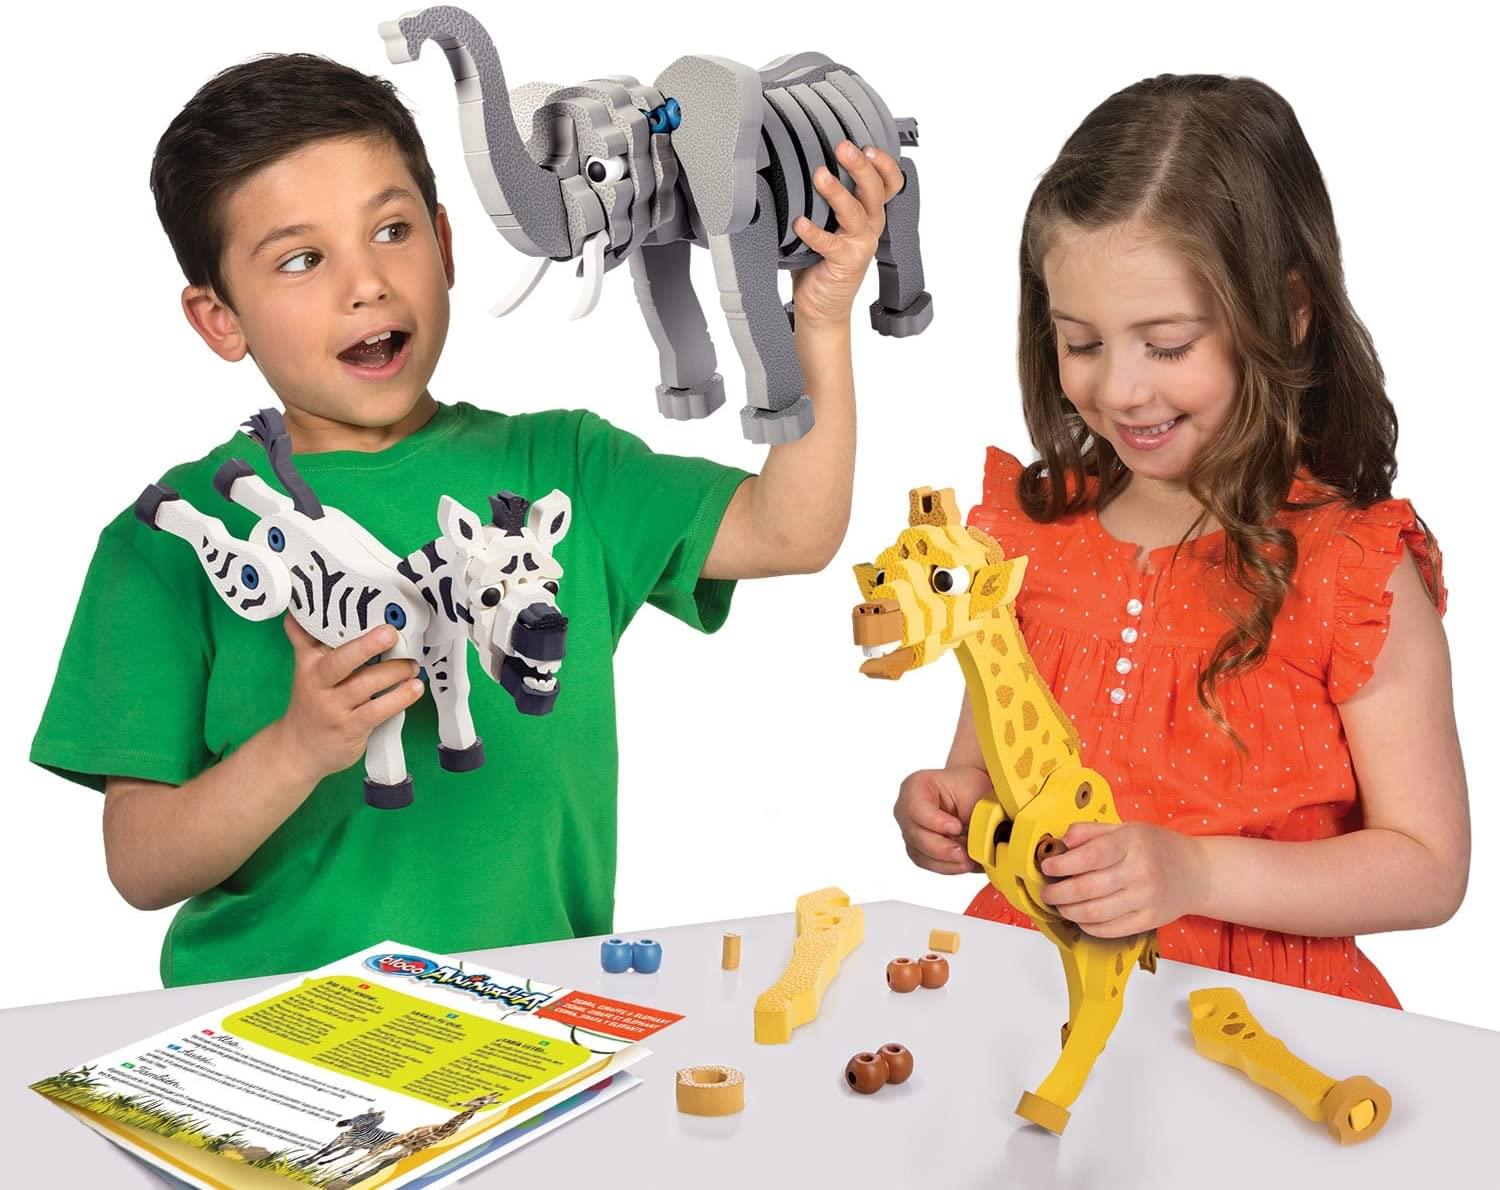 Bloco 230 Piece Construction Set | Zebra, Giraffe & Elephant